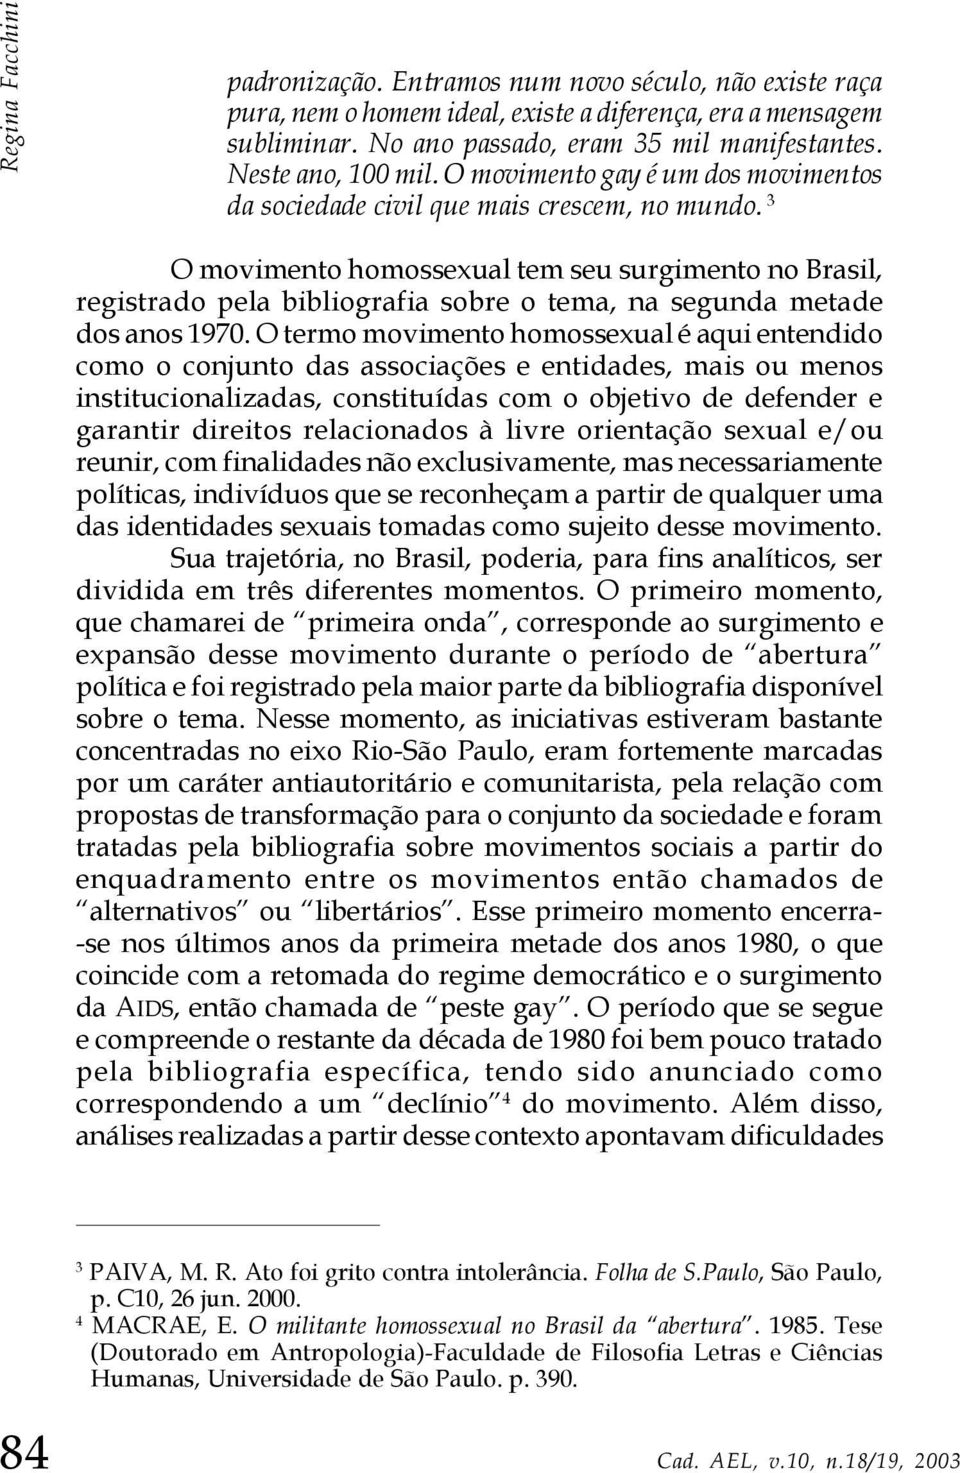 3 O movimento homossexual tem seu surgimento no Brasil, registrado pela bibliografia sobre o tema, na segunda metade dos anos 1970.